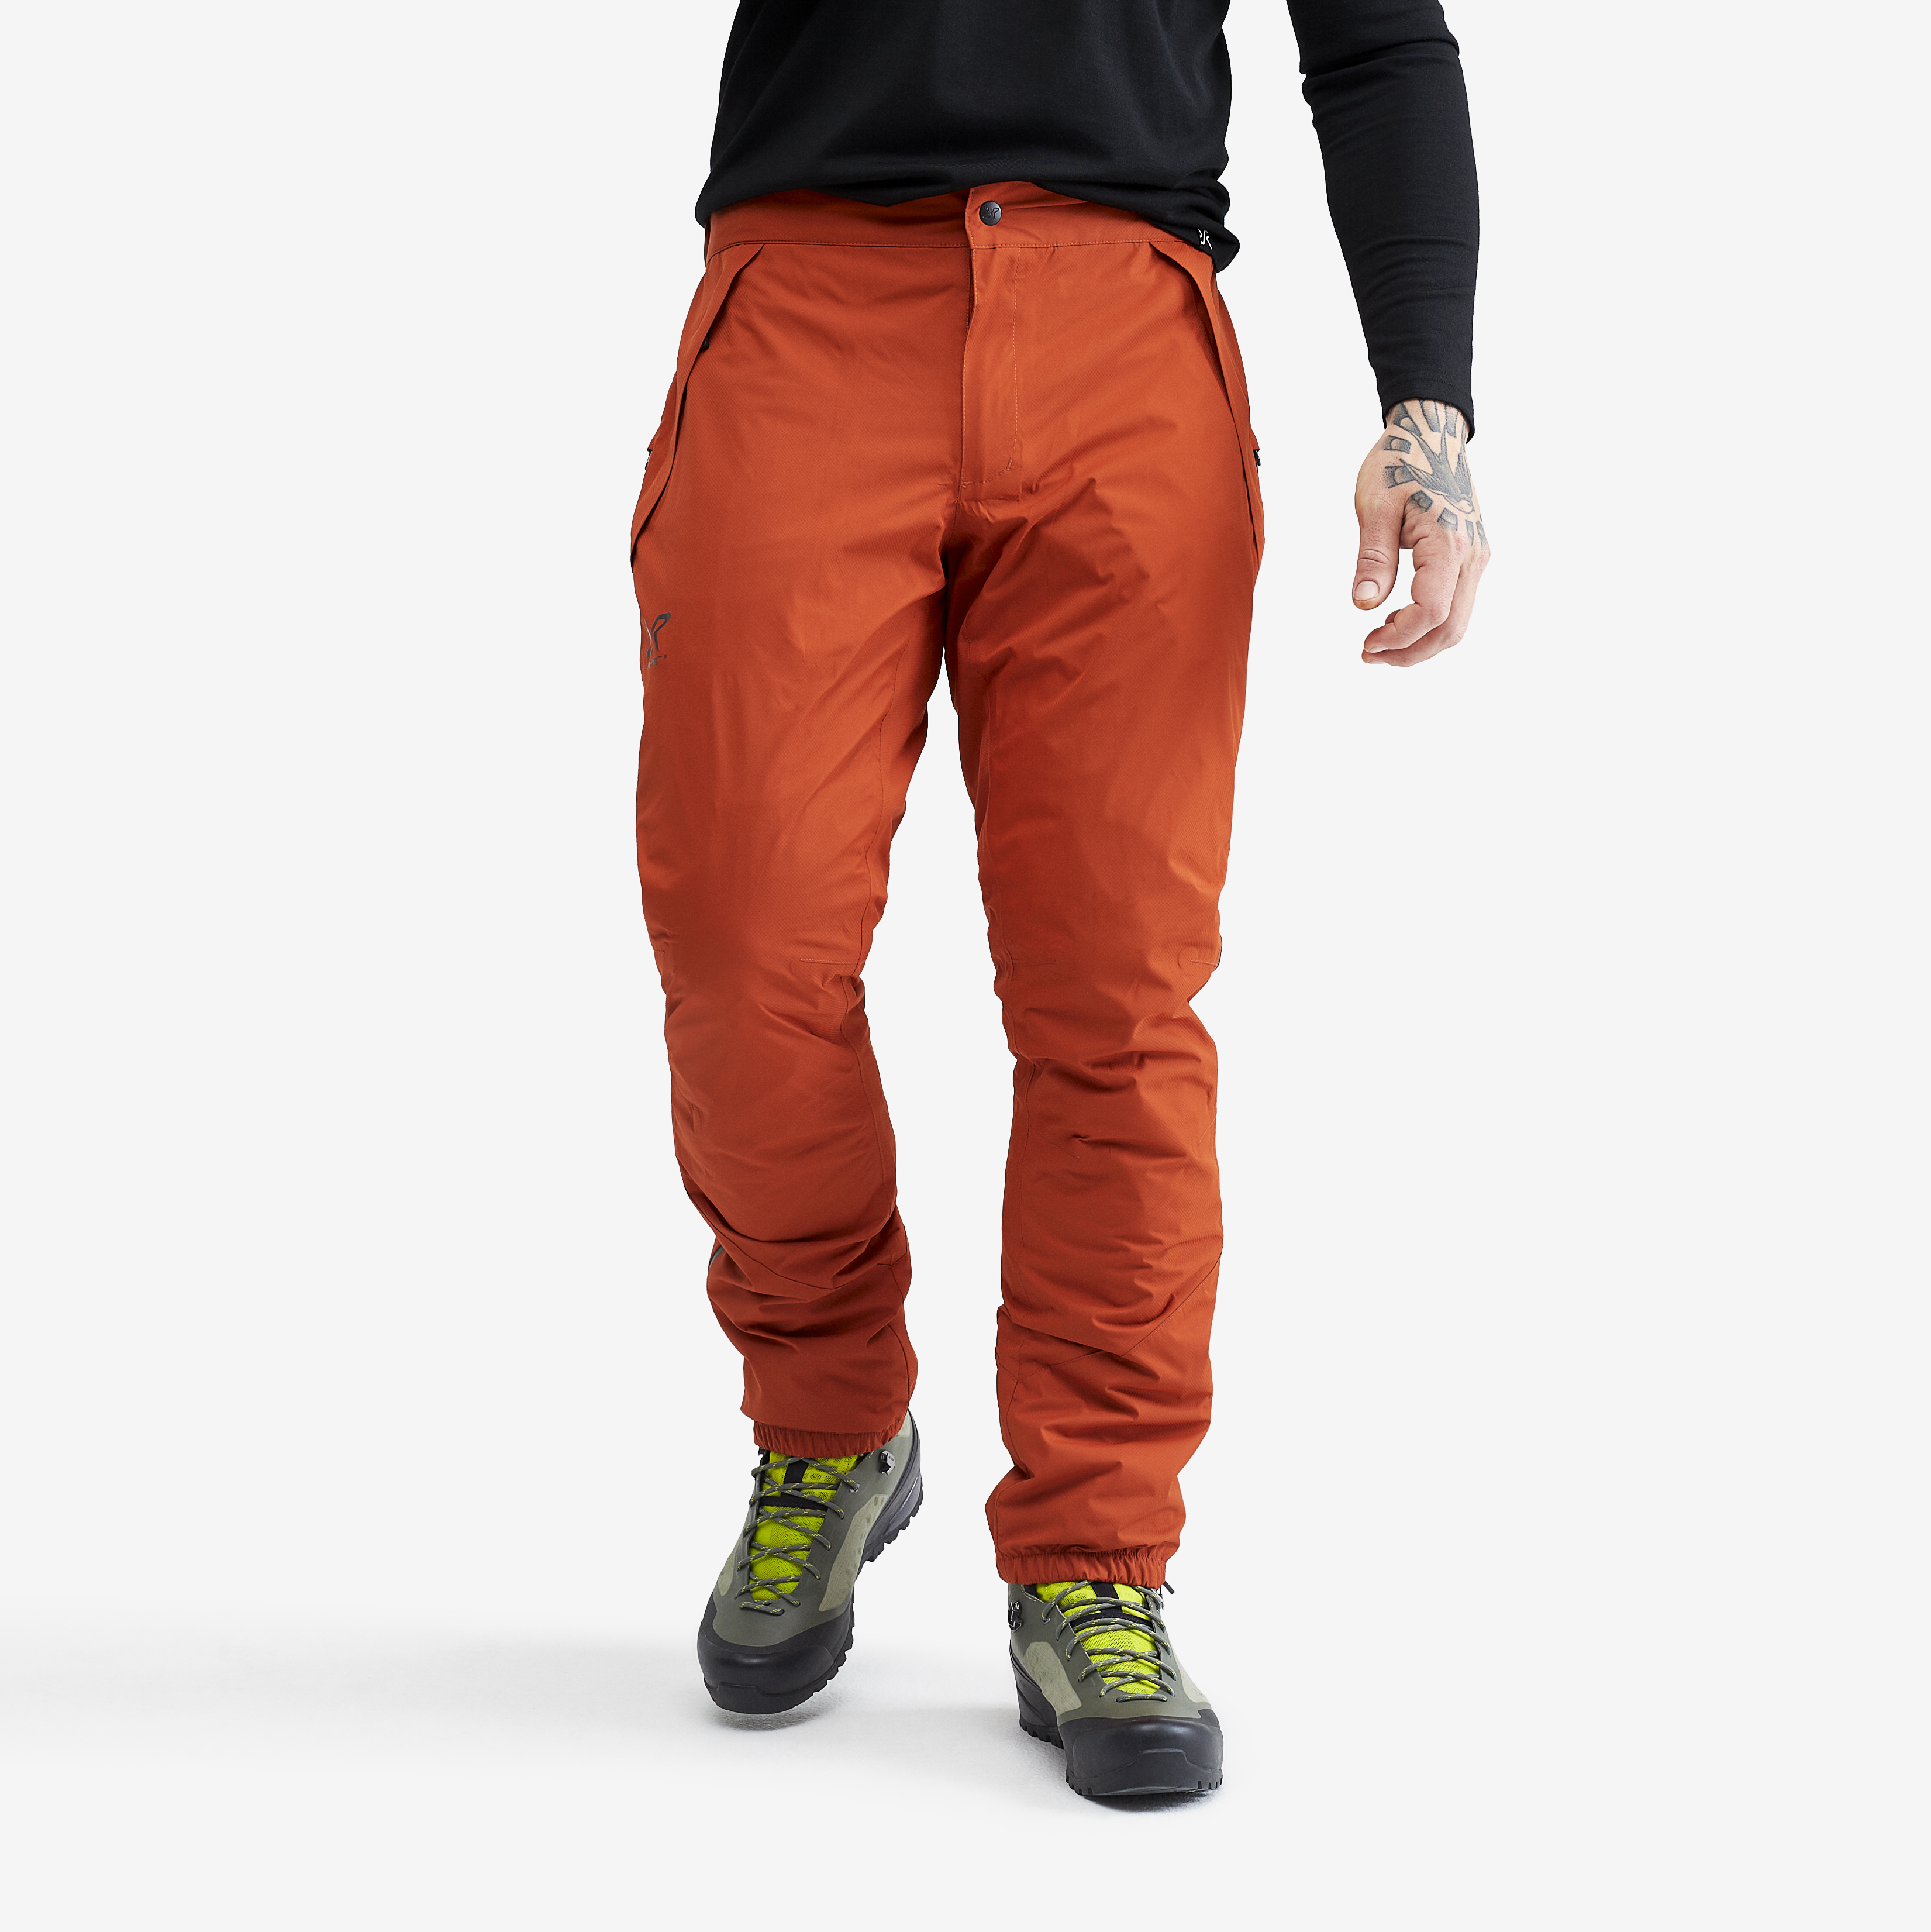 Typhoon waterproof trousers for men in orange